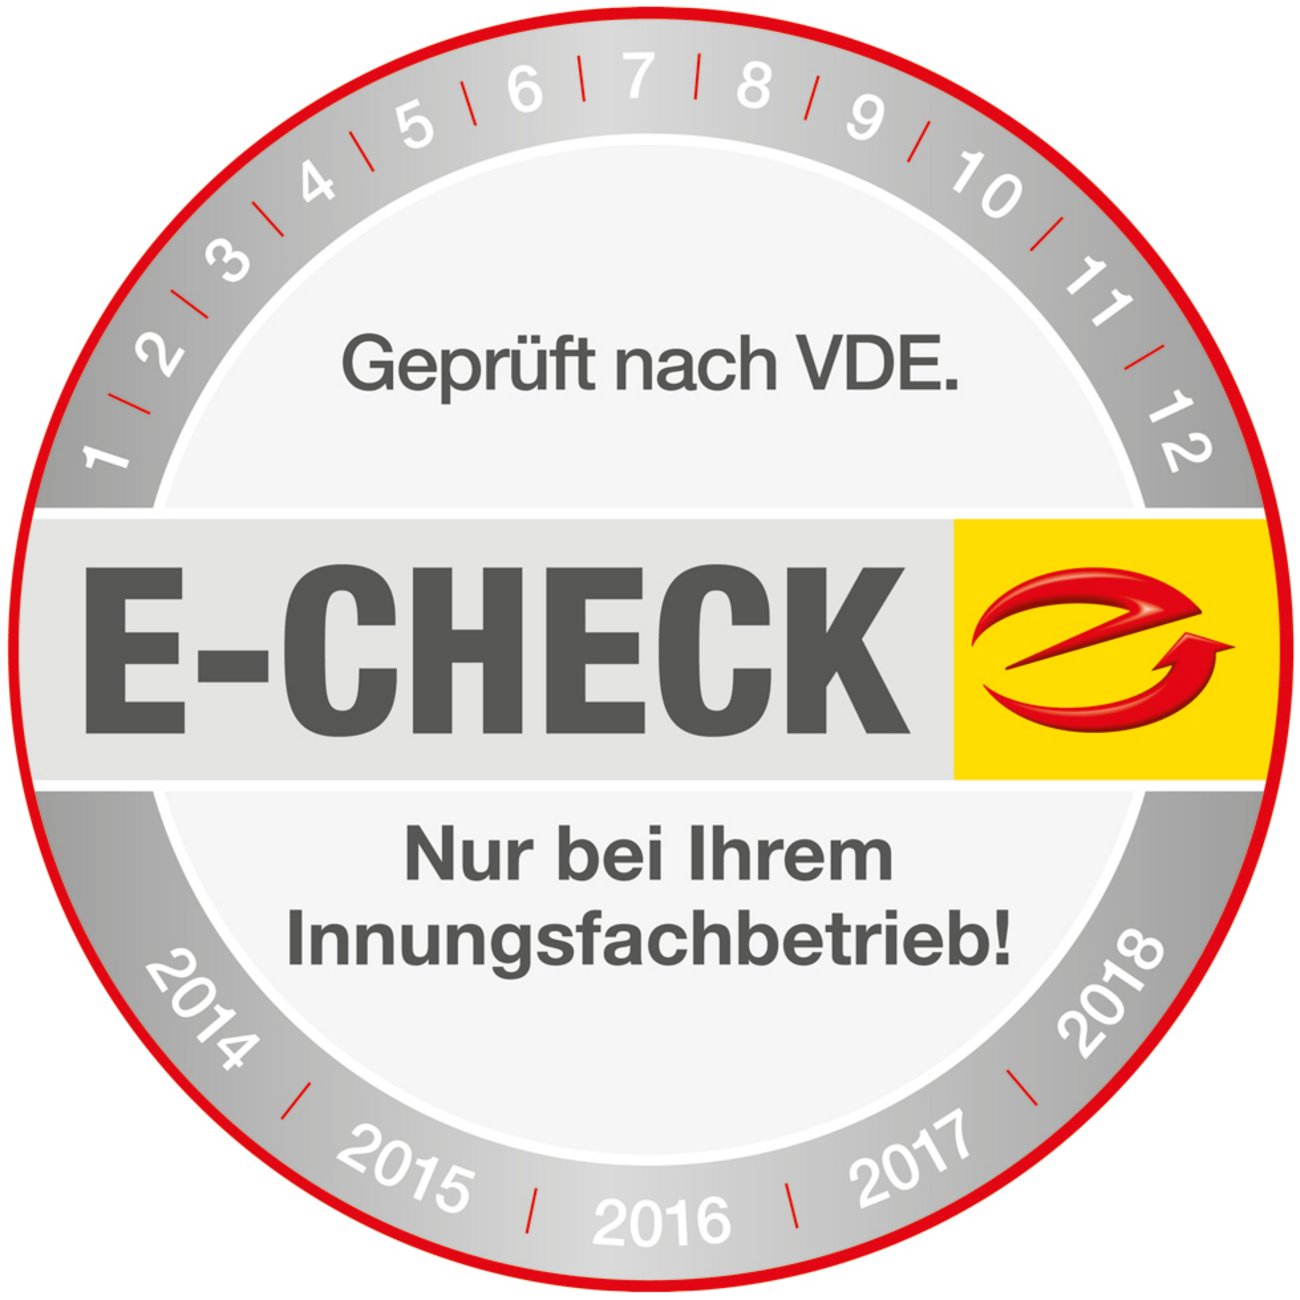 Der E-Check bei MMDS Der Elektromeister GmbH in Herzogenaurach